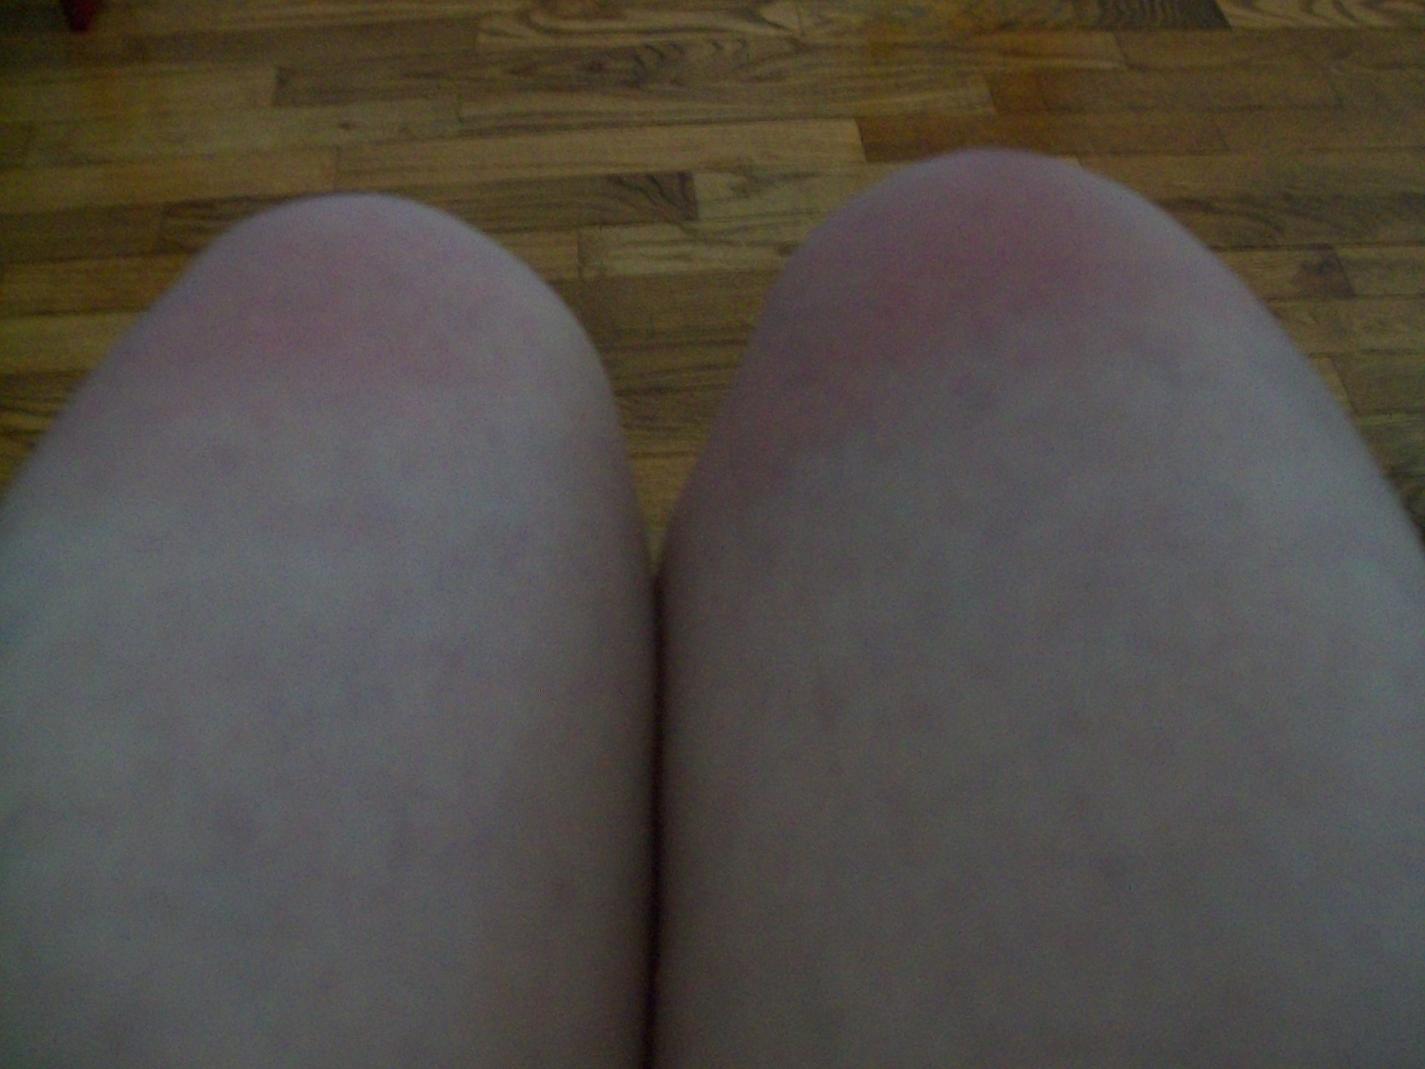 Both Knees Sunburned-sunburned-knees-020-jpg